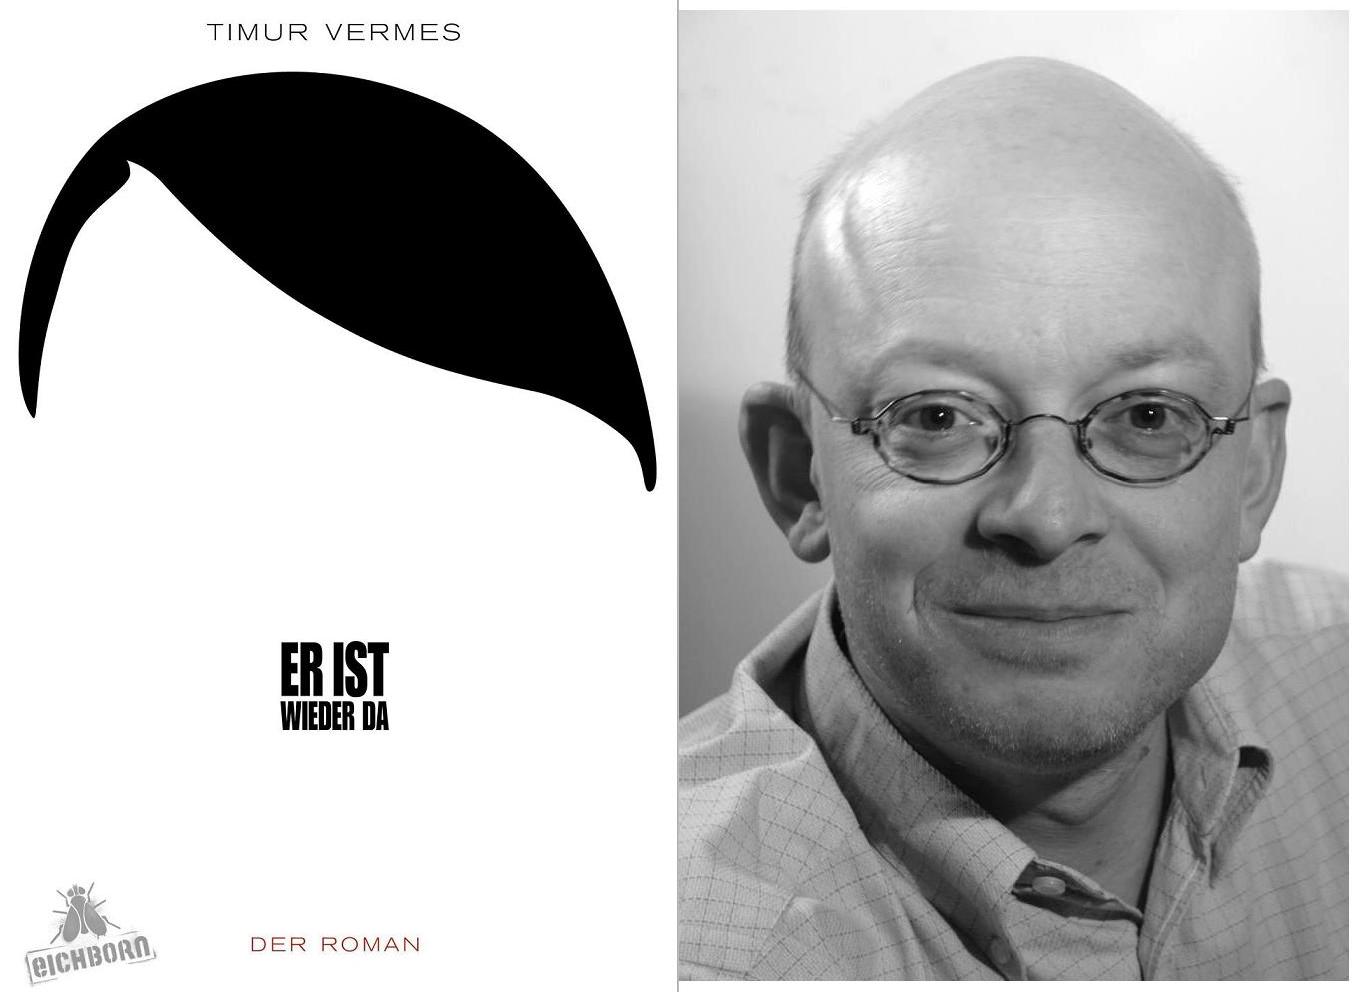 Timur Vermes, autor-bigote